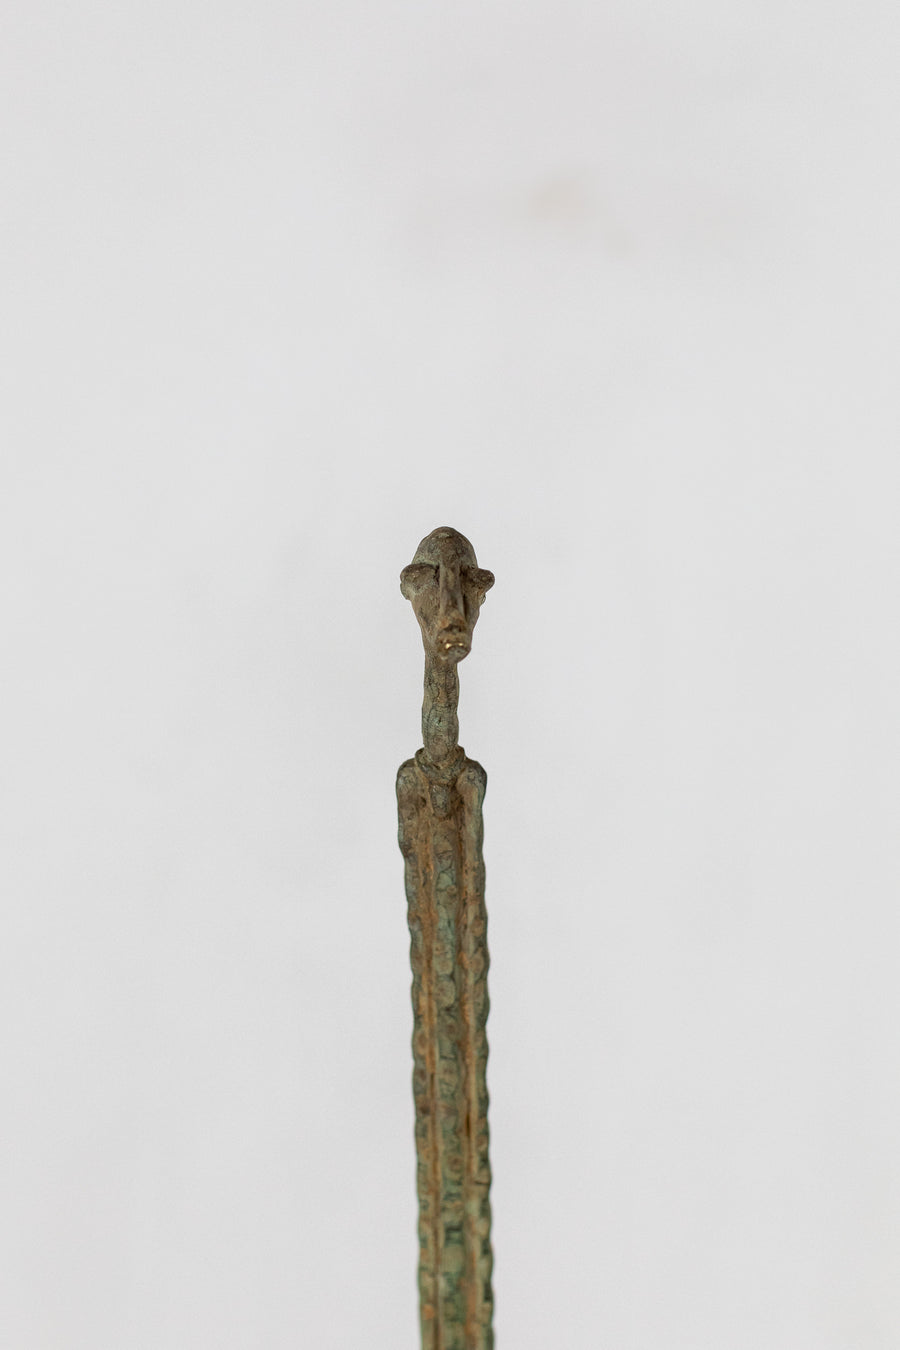 Hombre Dogón Supyire - País: Mali (Dogón)  Material: Aleación de bronce  Medidas: Altura 96cm